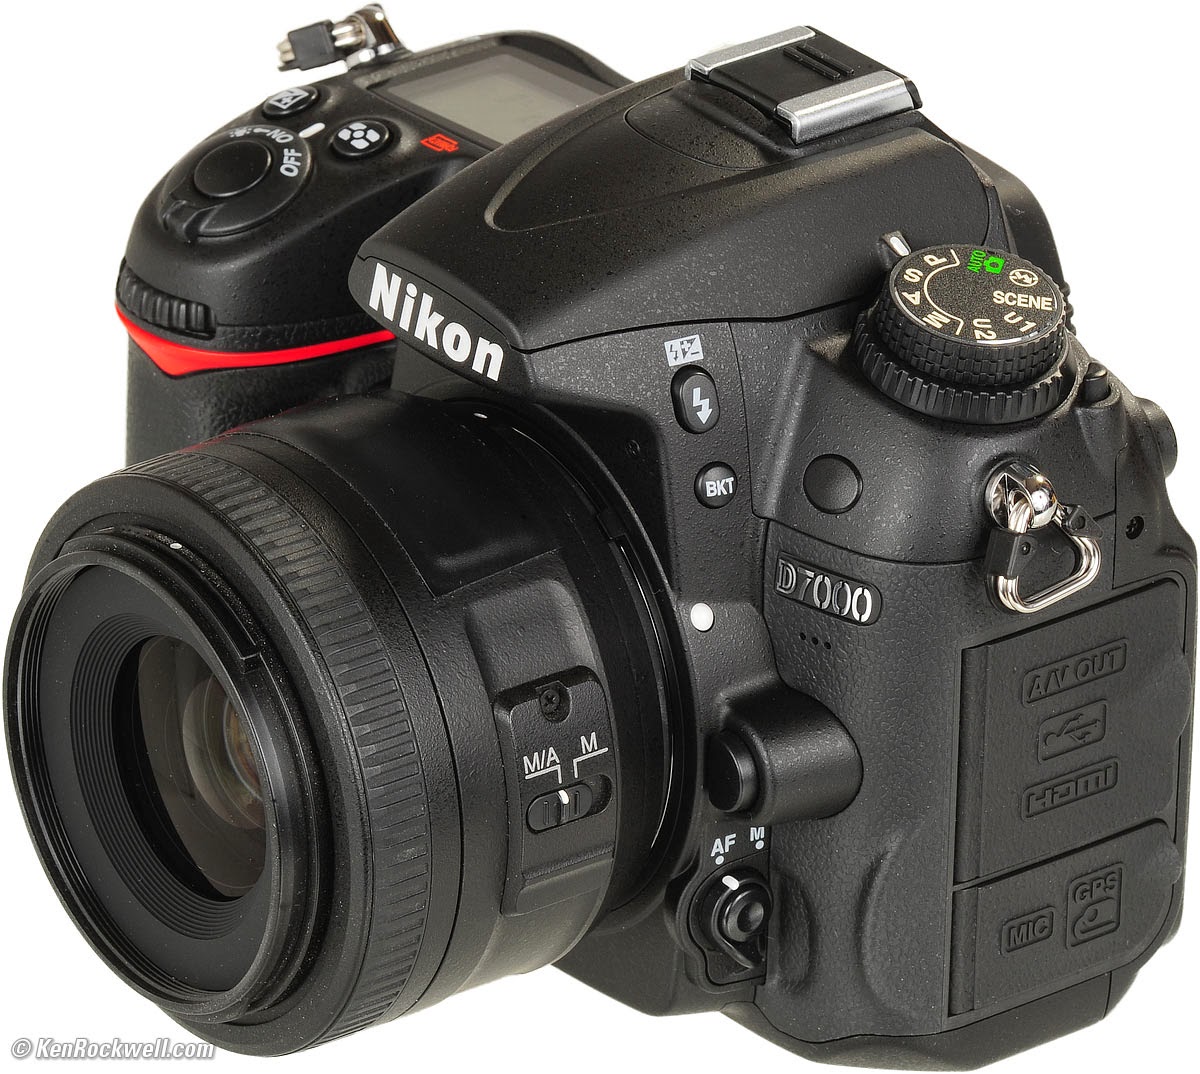 Harga Kamera Nikon D7000 - Terbaru 2015 dan Spesifikasi - Harga Kamera